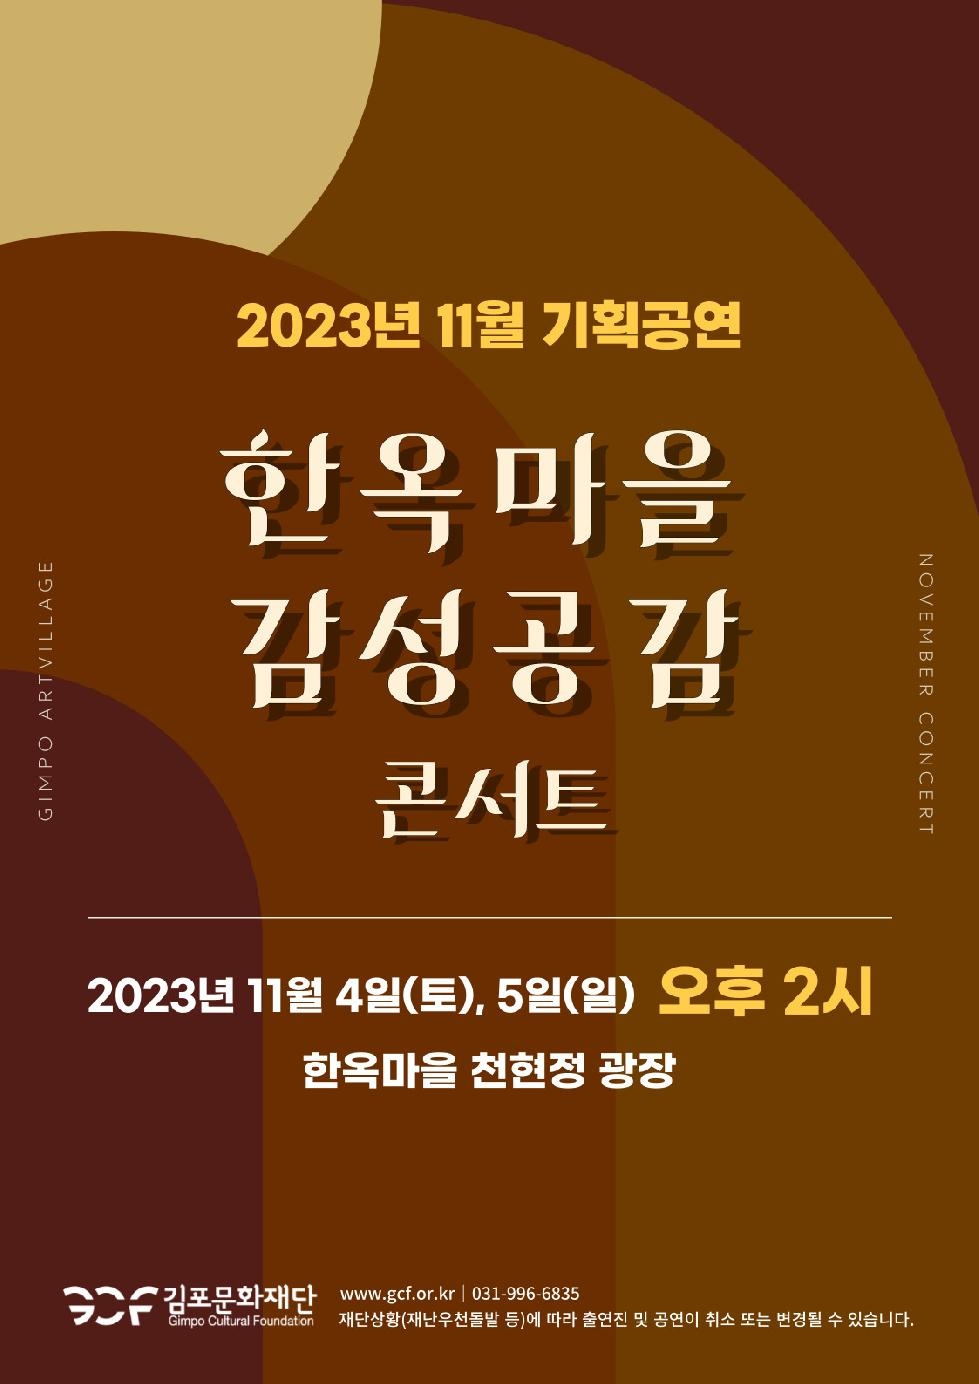 김포문화재단 한옥마을 11월 기획공연  「한옥마을 감성공감 콘서트」 개최